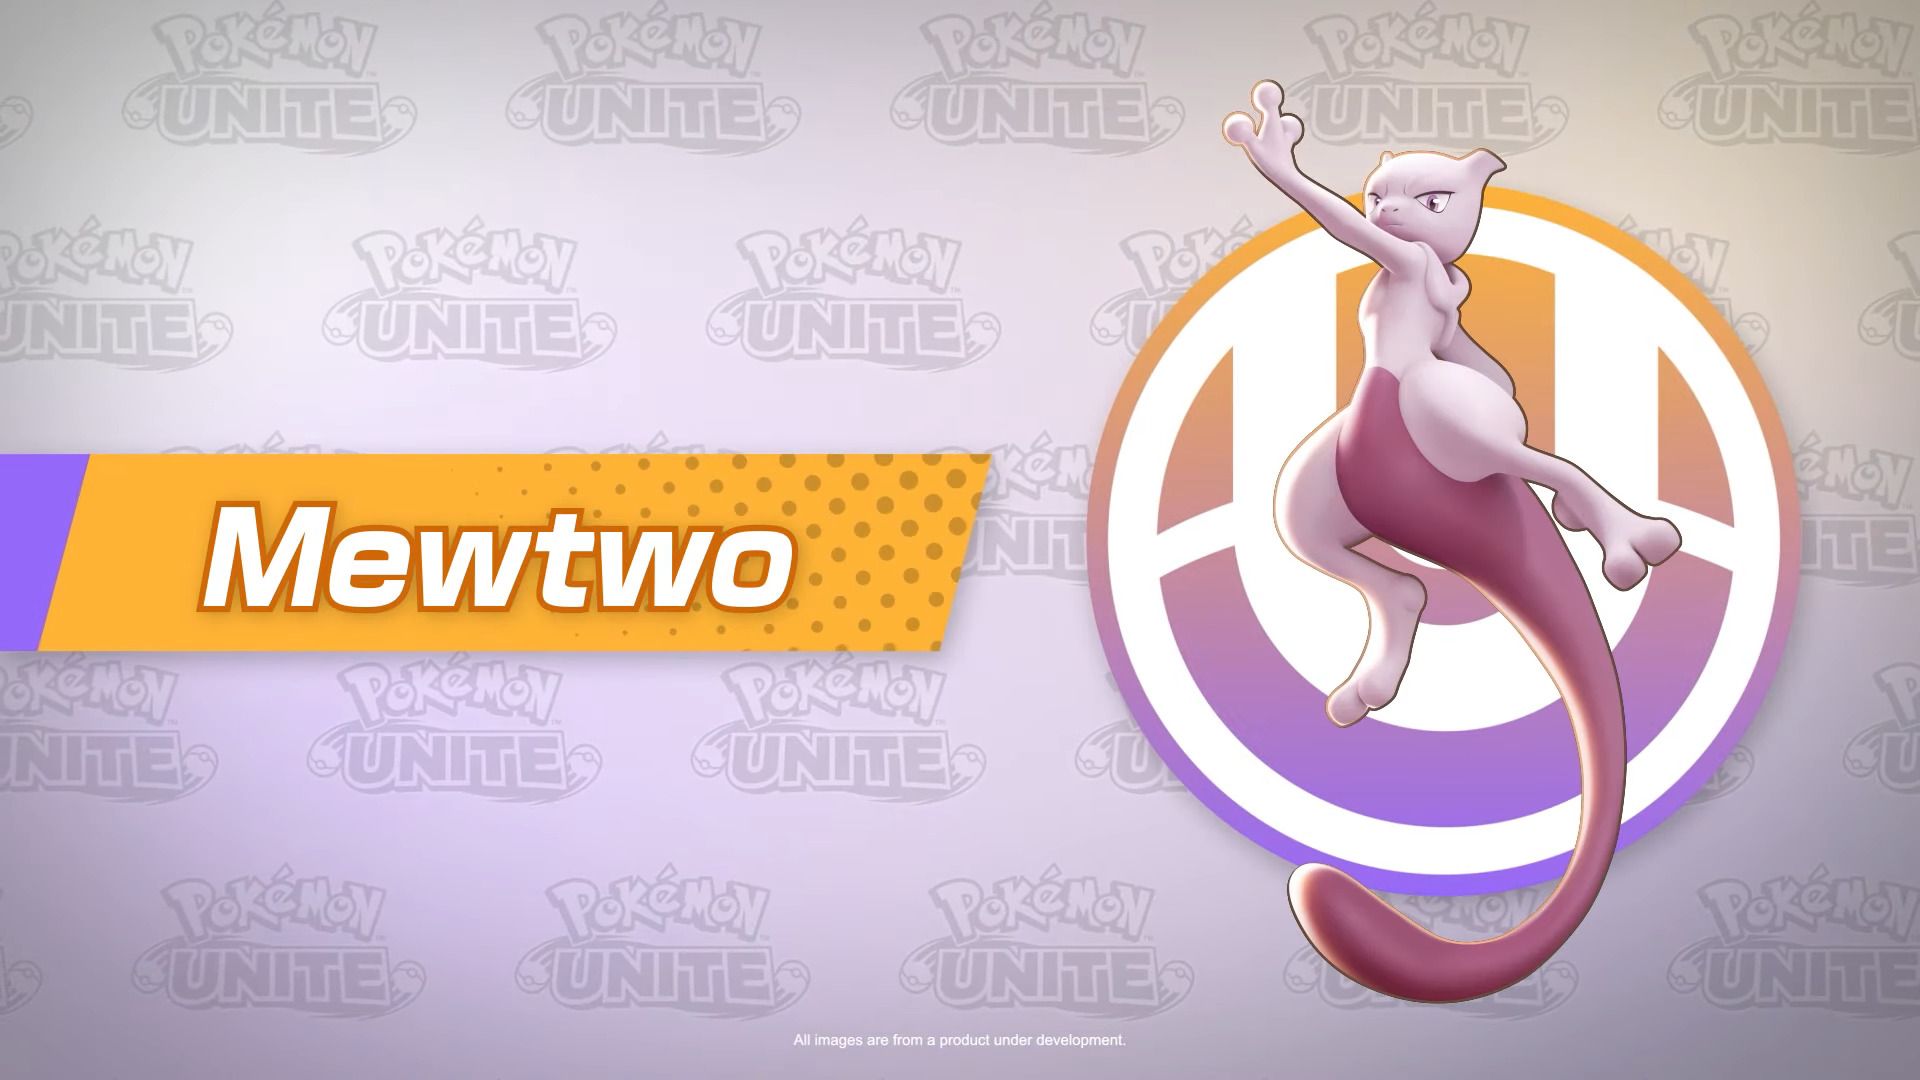 #Pokémon Unite feiert das zweijährige Jubiläum mit der Ankunft von Mewtu